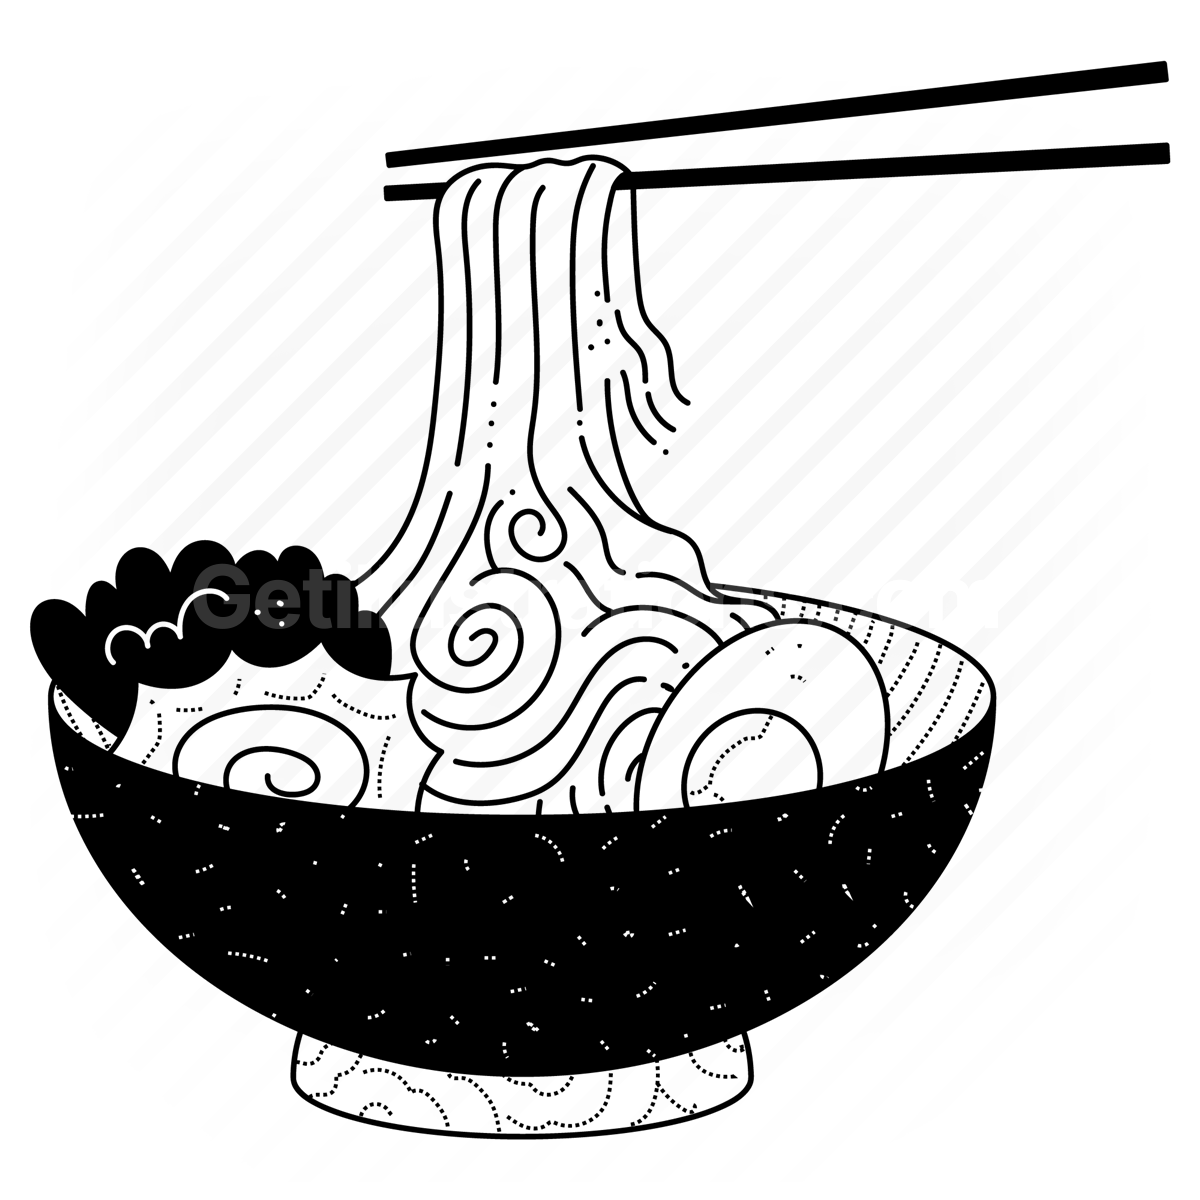 meal, restaurant, gastronomy, noodle, bowl, chopsticks, asian, culture, diet